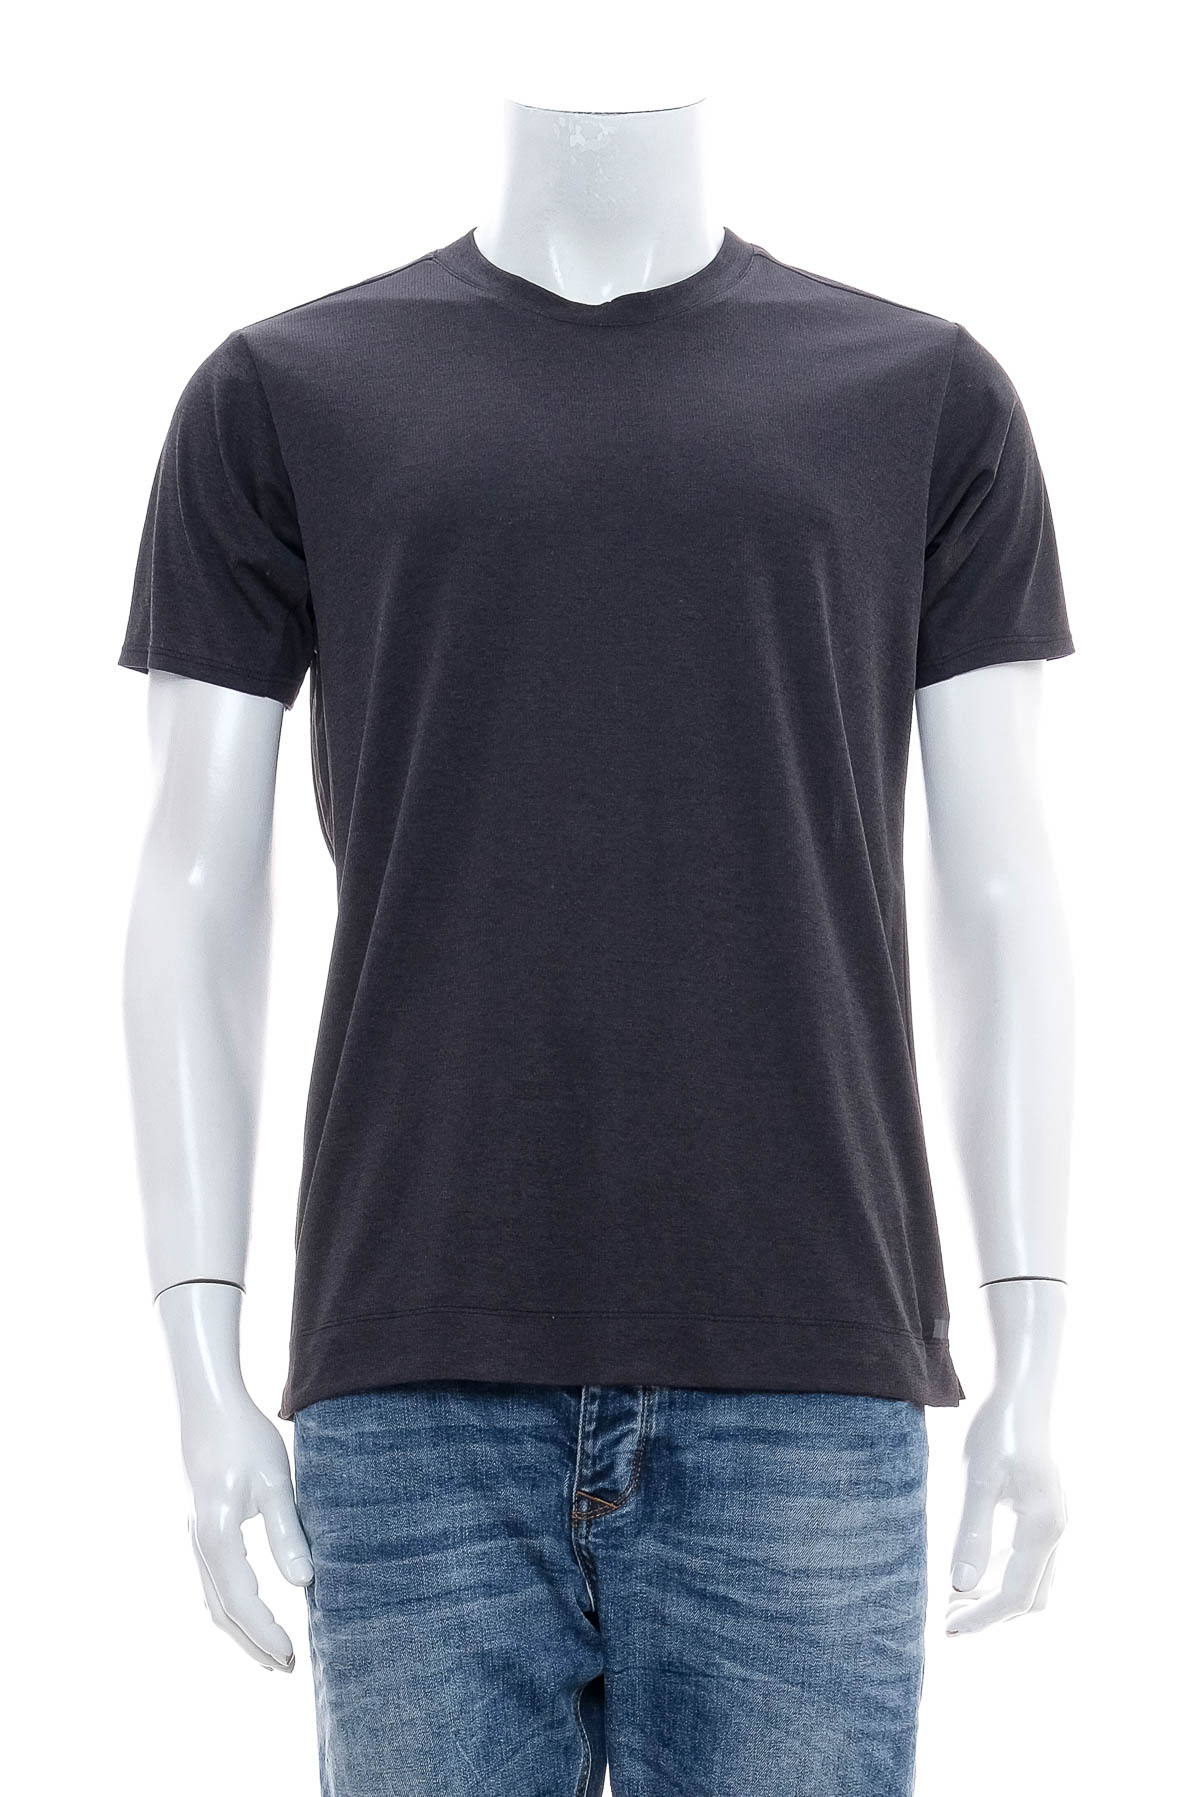 Ανδρικό μπλουζάκι - Adidas climachill - 0